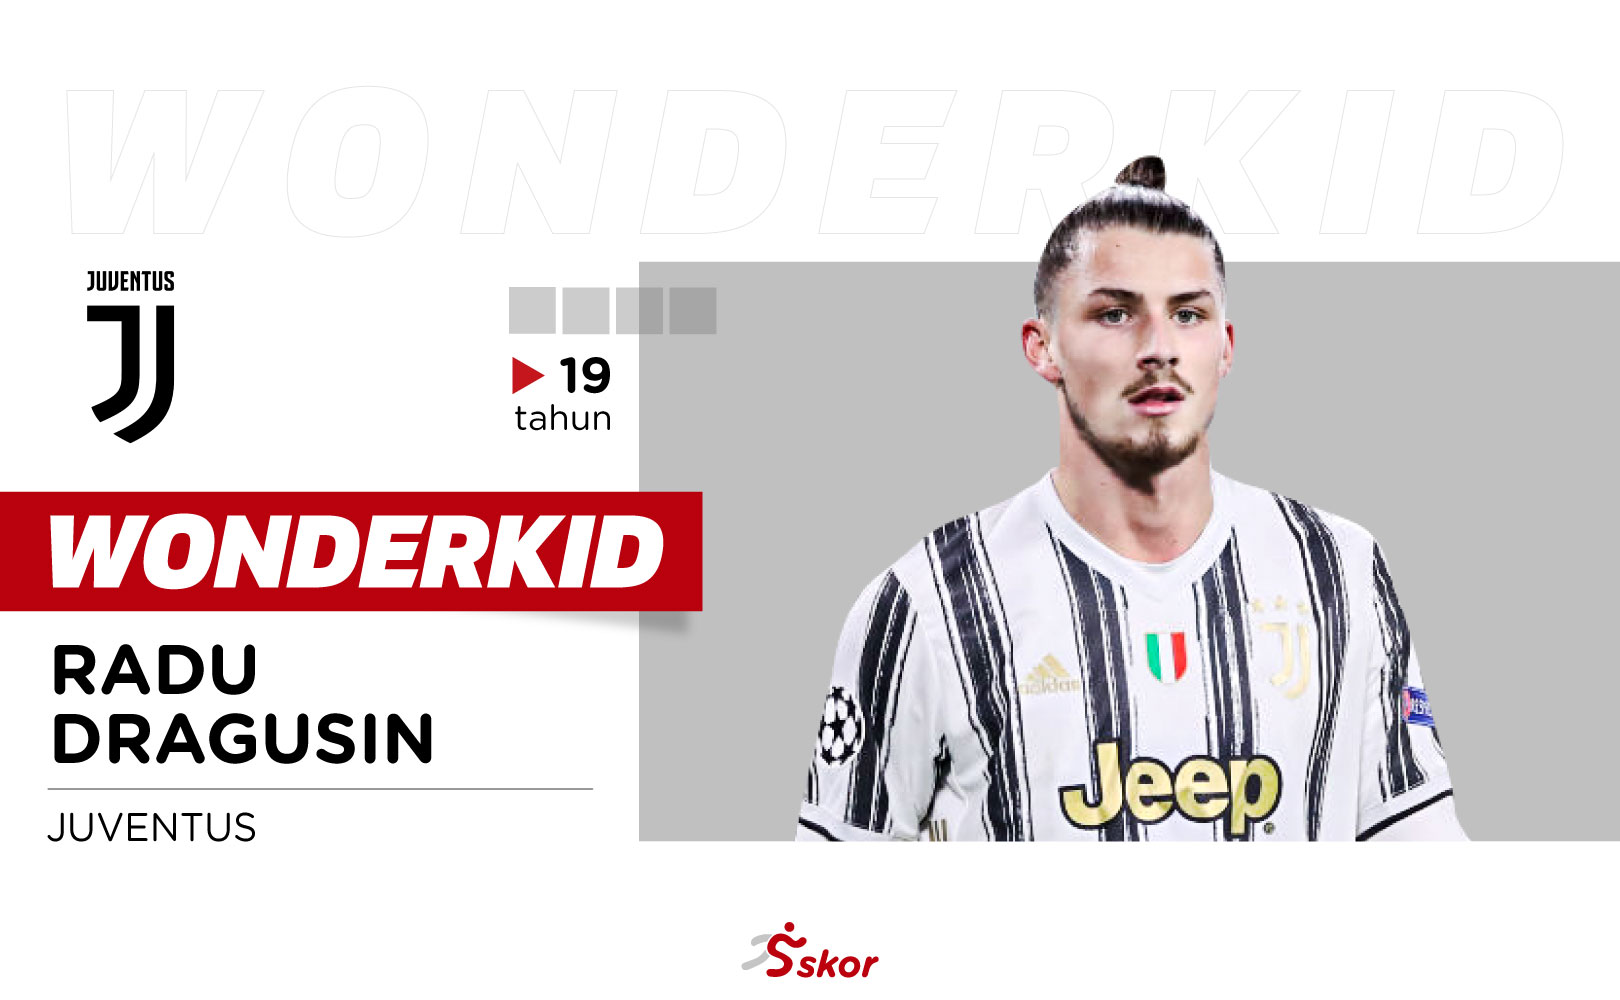 Wonderkid: Radu Dragusin, Penerus Chiellini-Bonucci di Juventus    